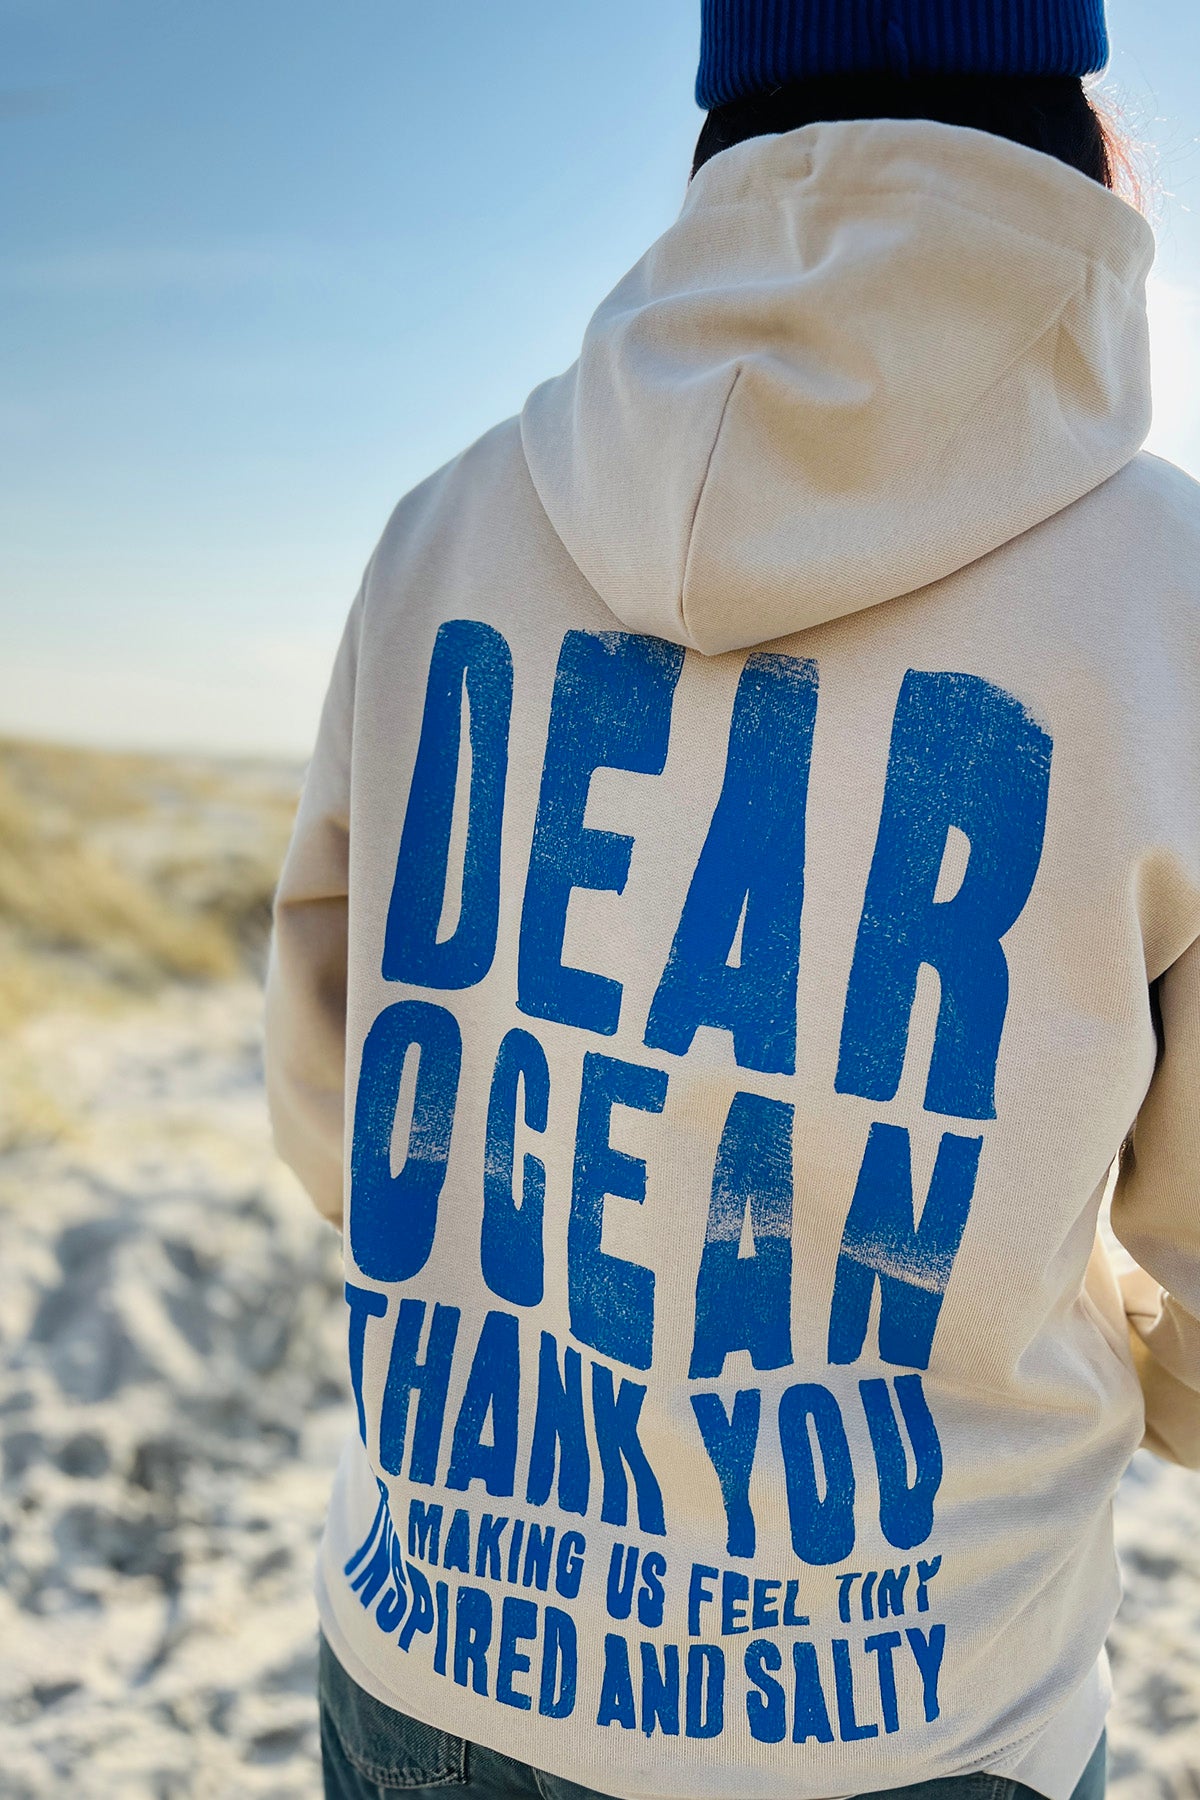 Hoodie "Dear Ocean"